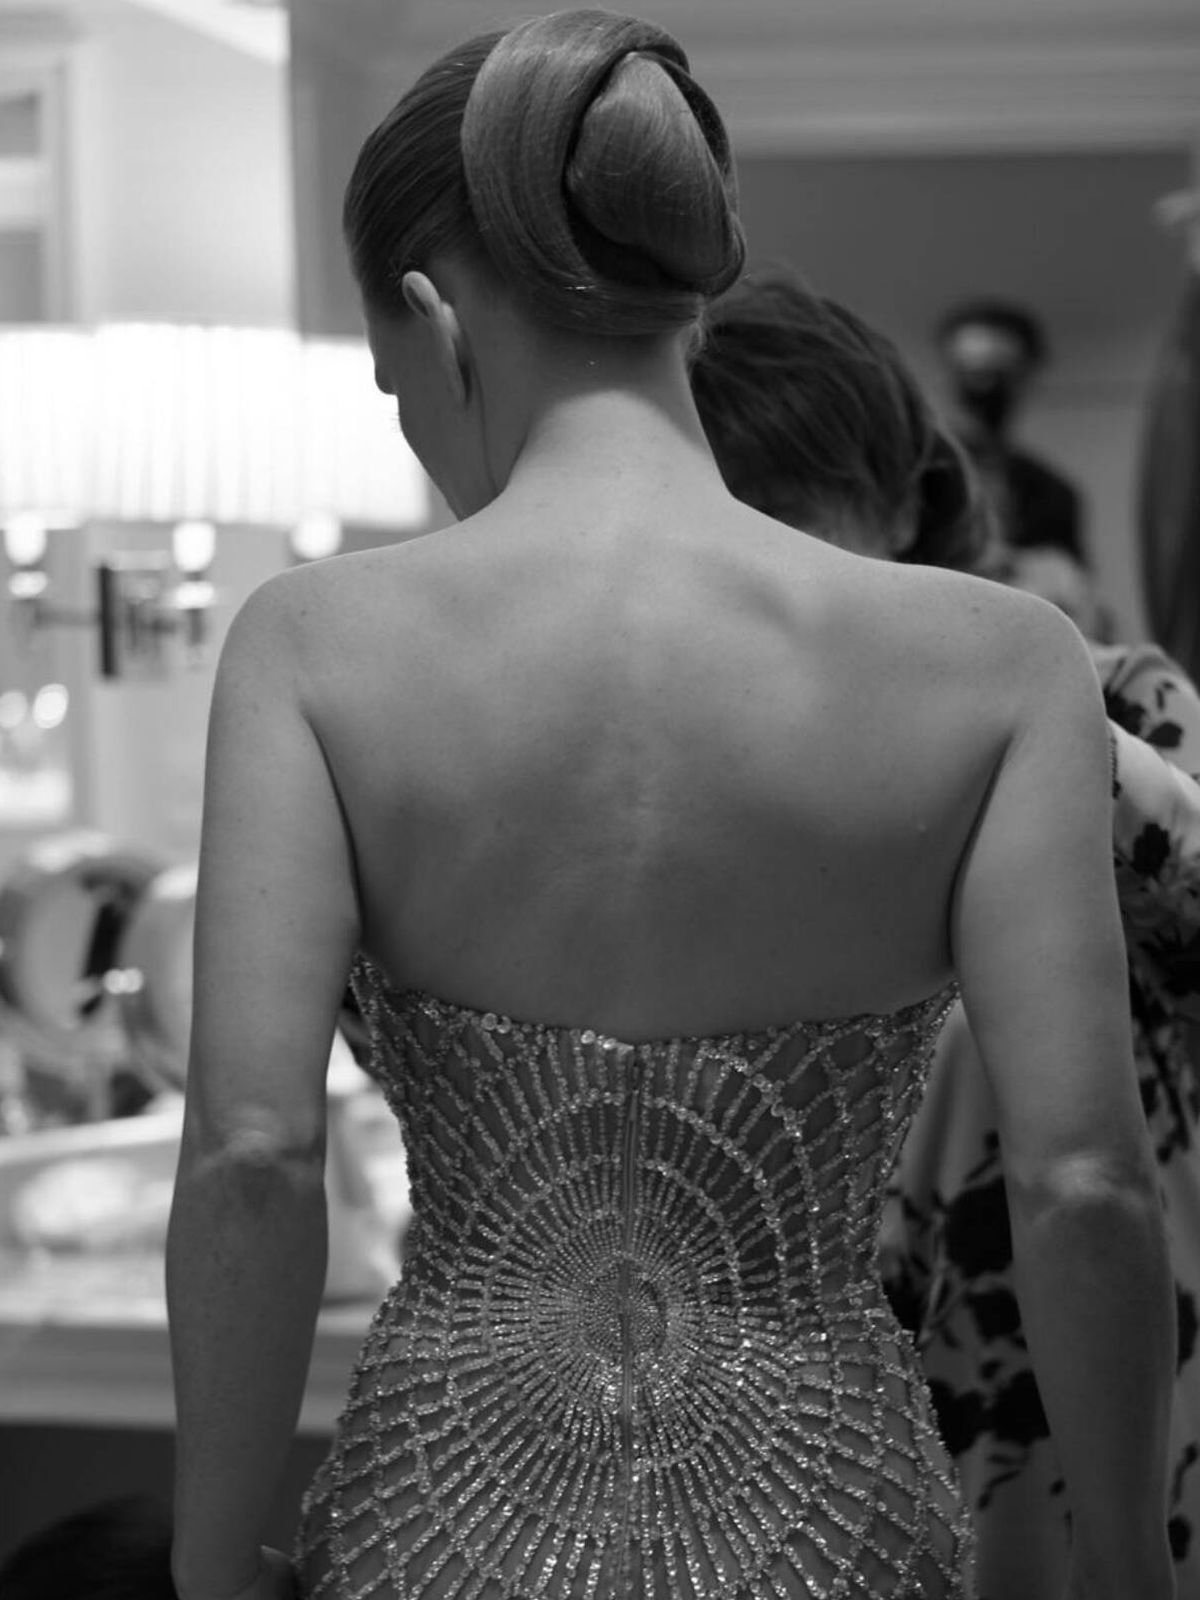 Detalle posterior del moño de Jessica Chastain para los Globos de Oro de 2023. (Instagram/@renatocampora)